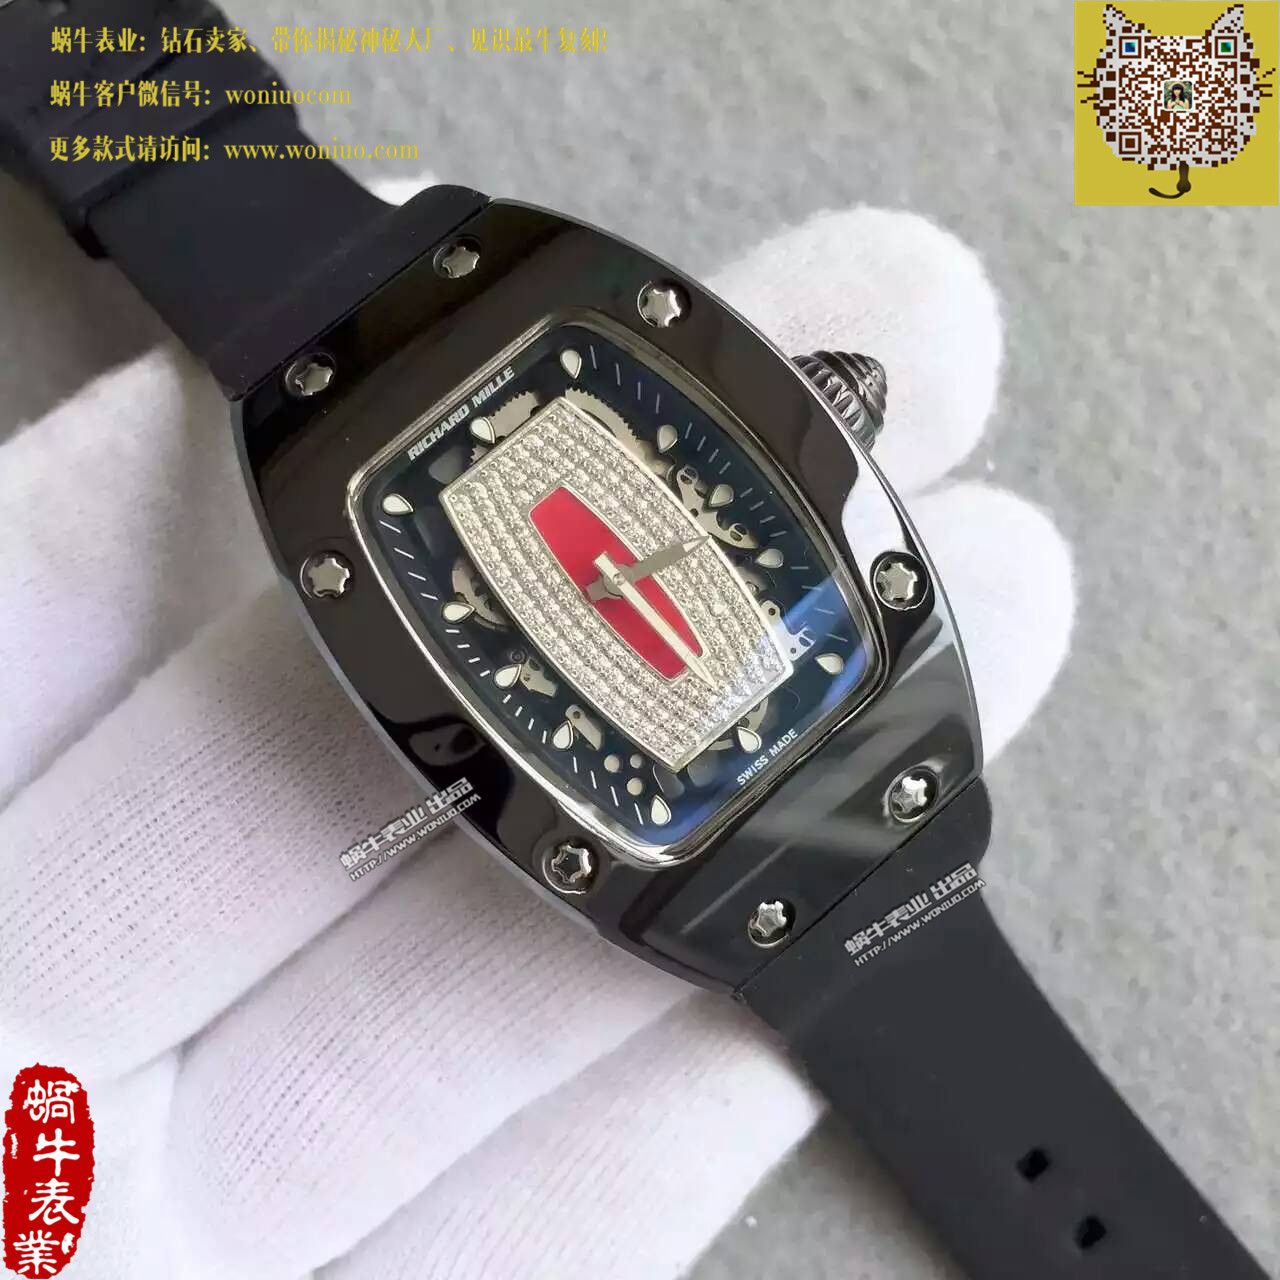 里查德米尔女士系列RM 07-01机械腕表 / RM07B